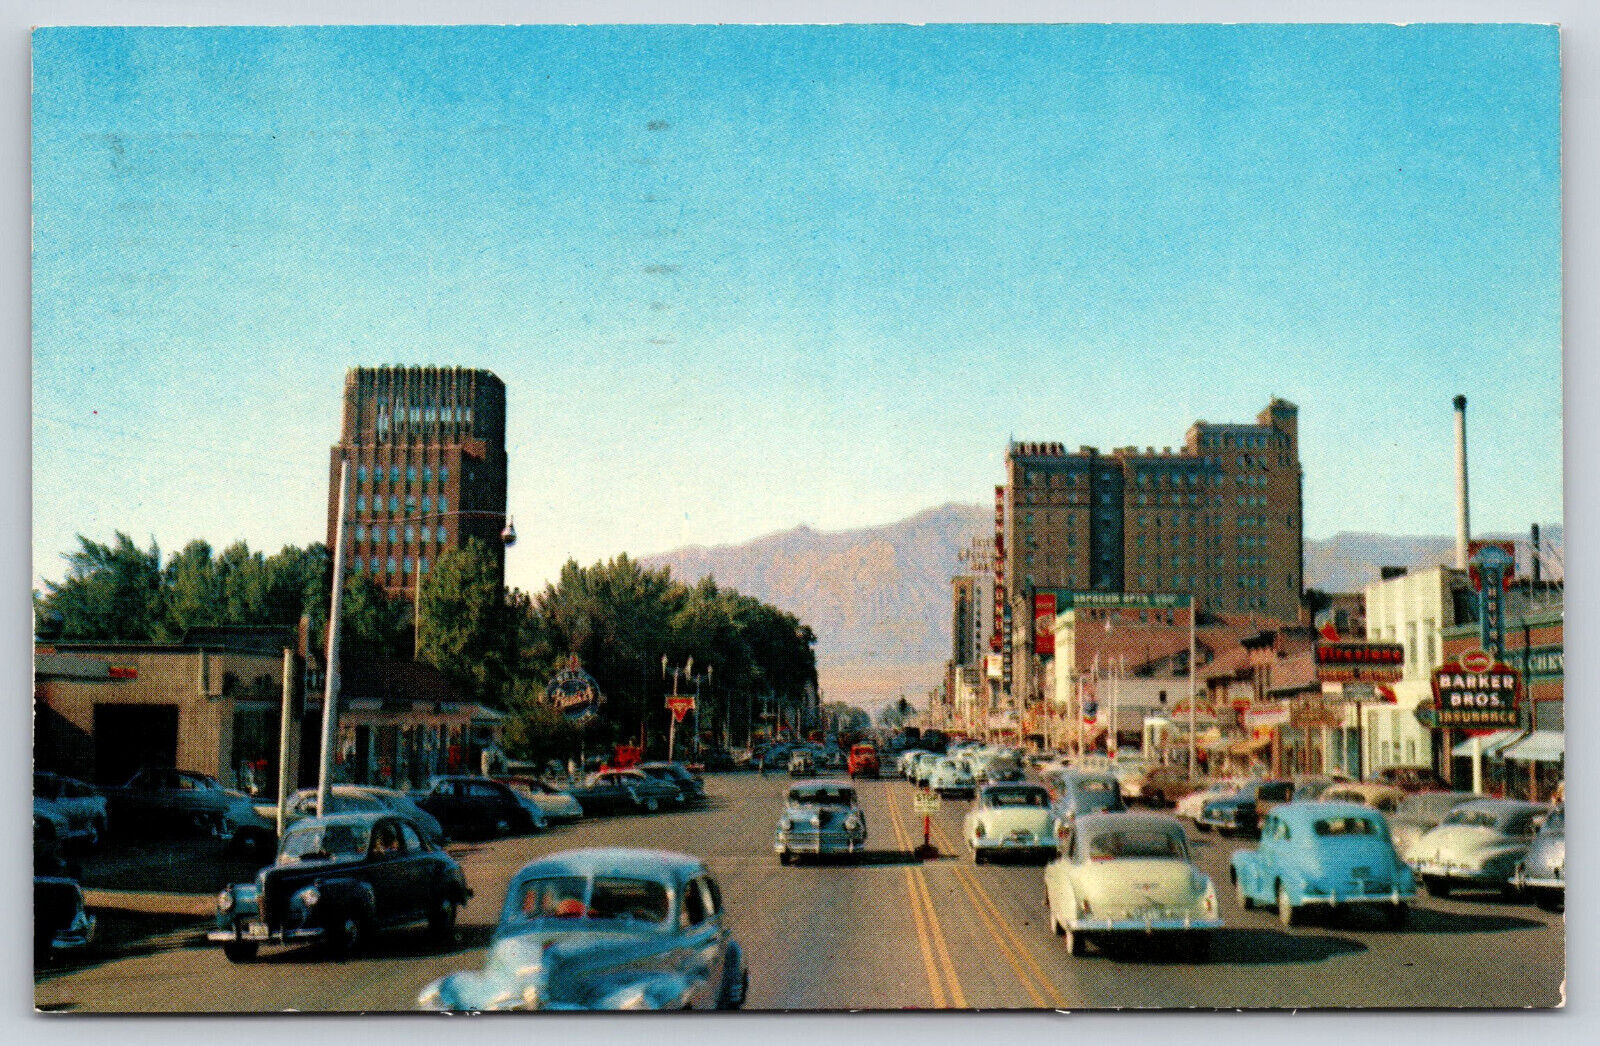 Ogden UT-Utah, Washington Boulevard, City Landscape, Old Cars, Vintage Postcard